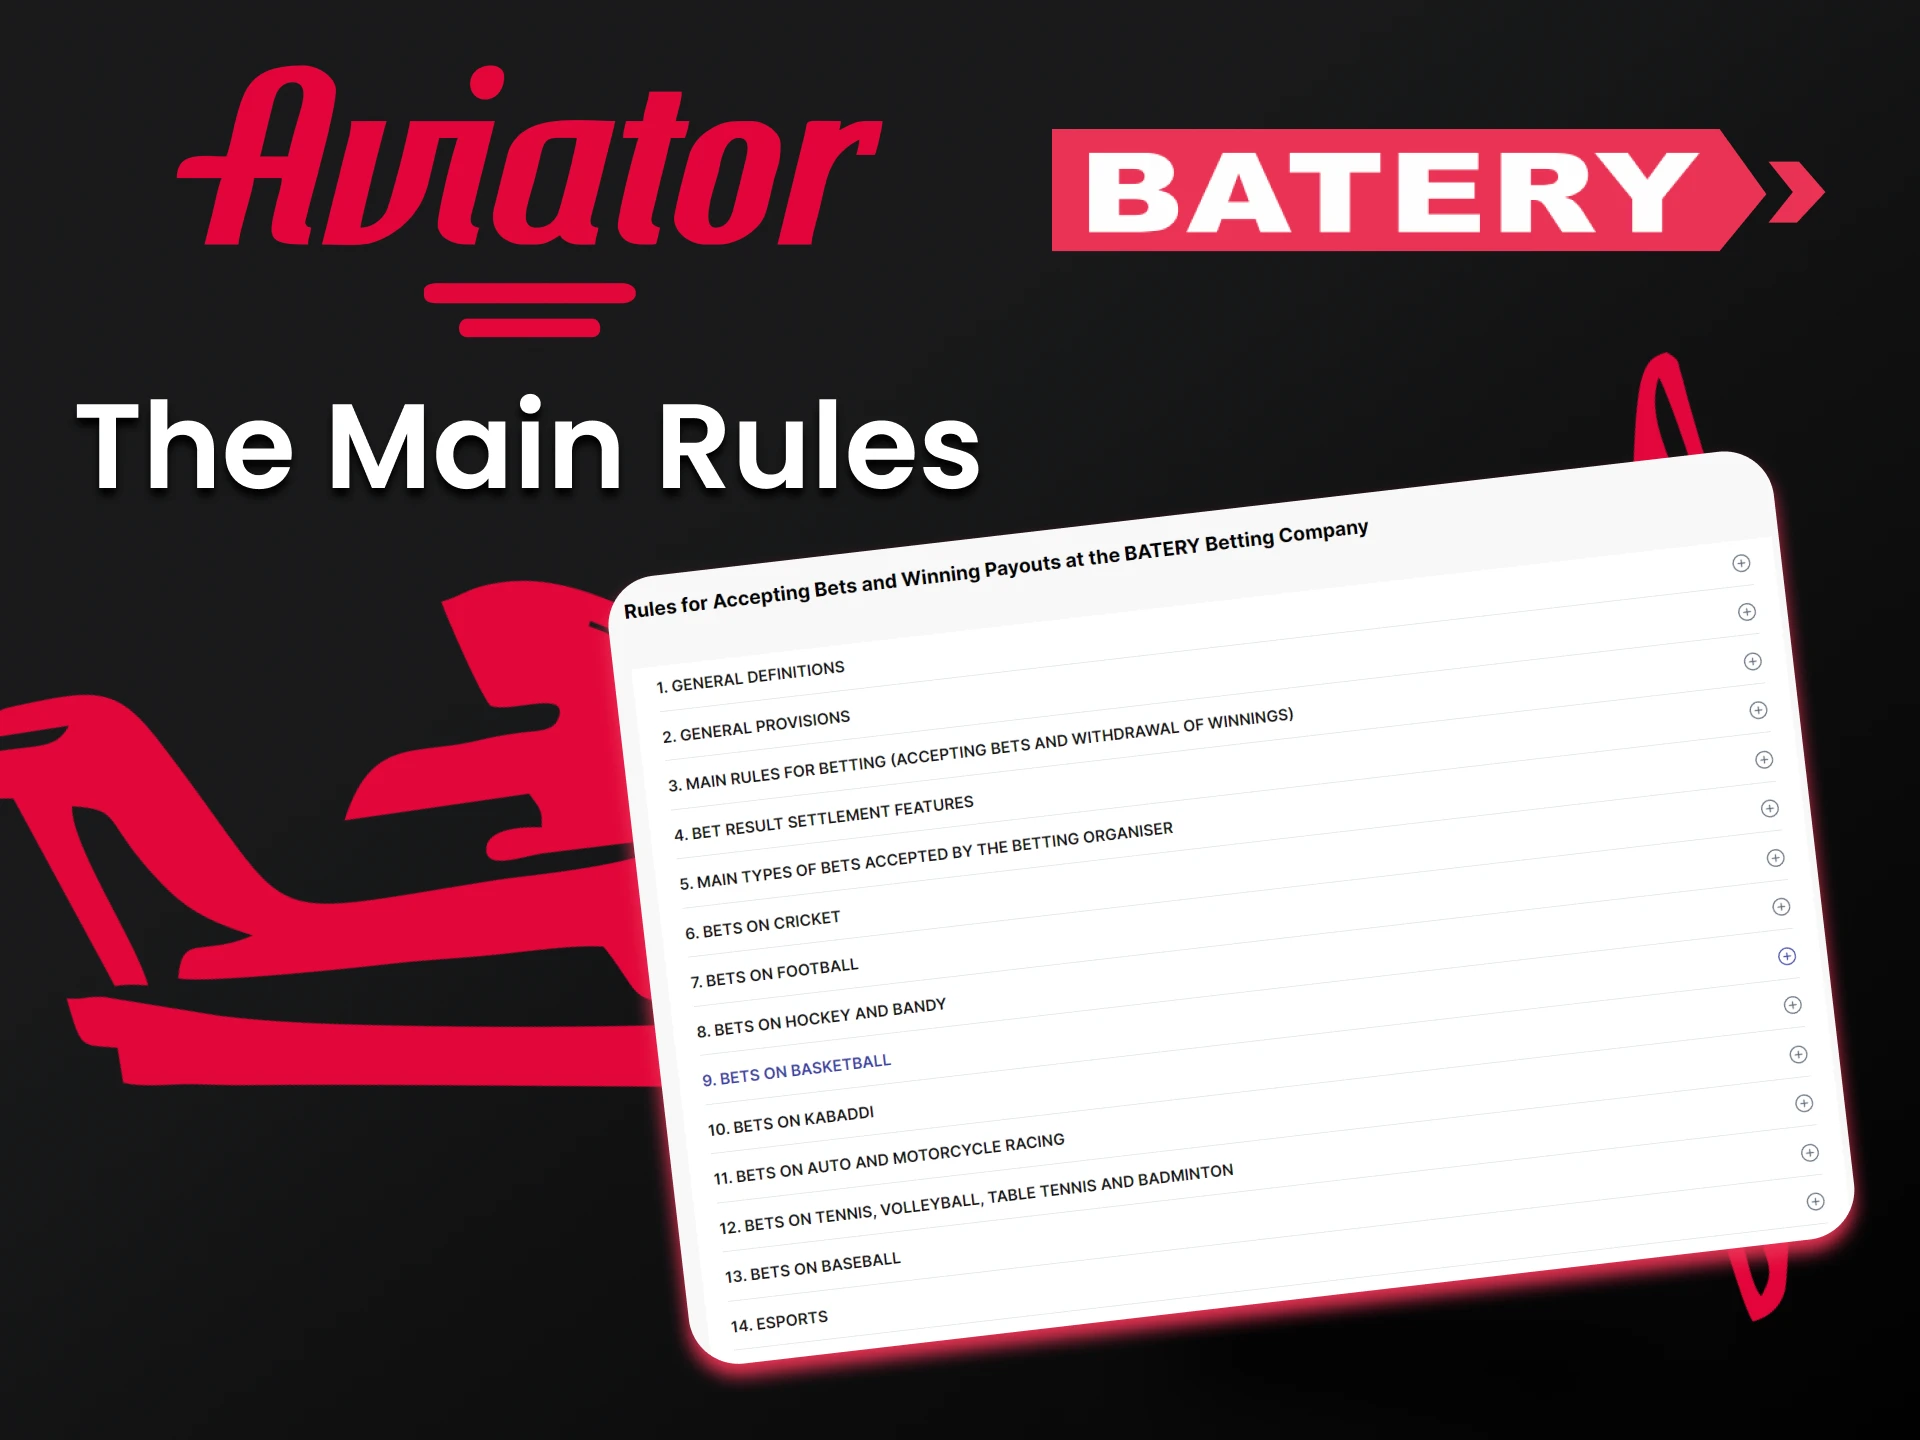 Aprenda as regras para usar o serviço Batery para jogar Aviator.